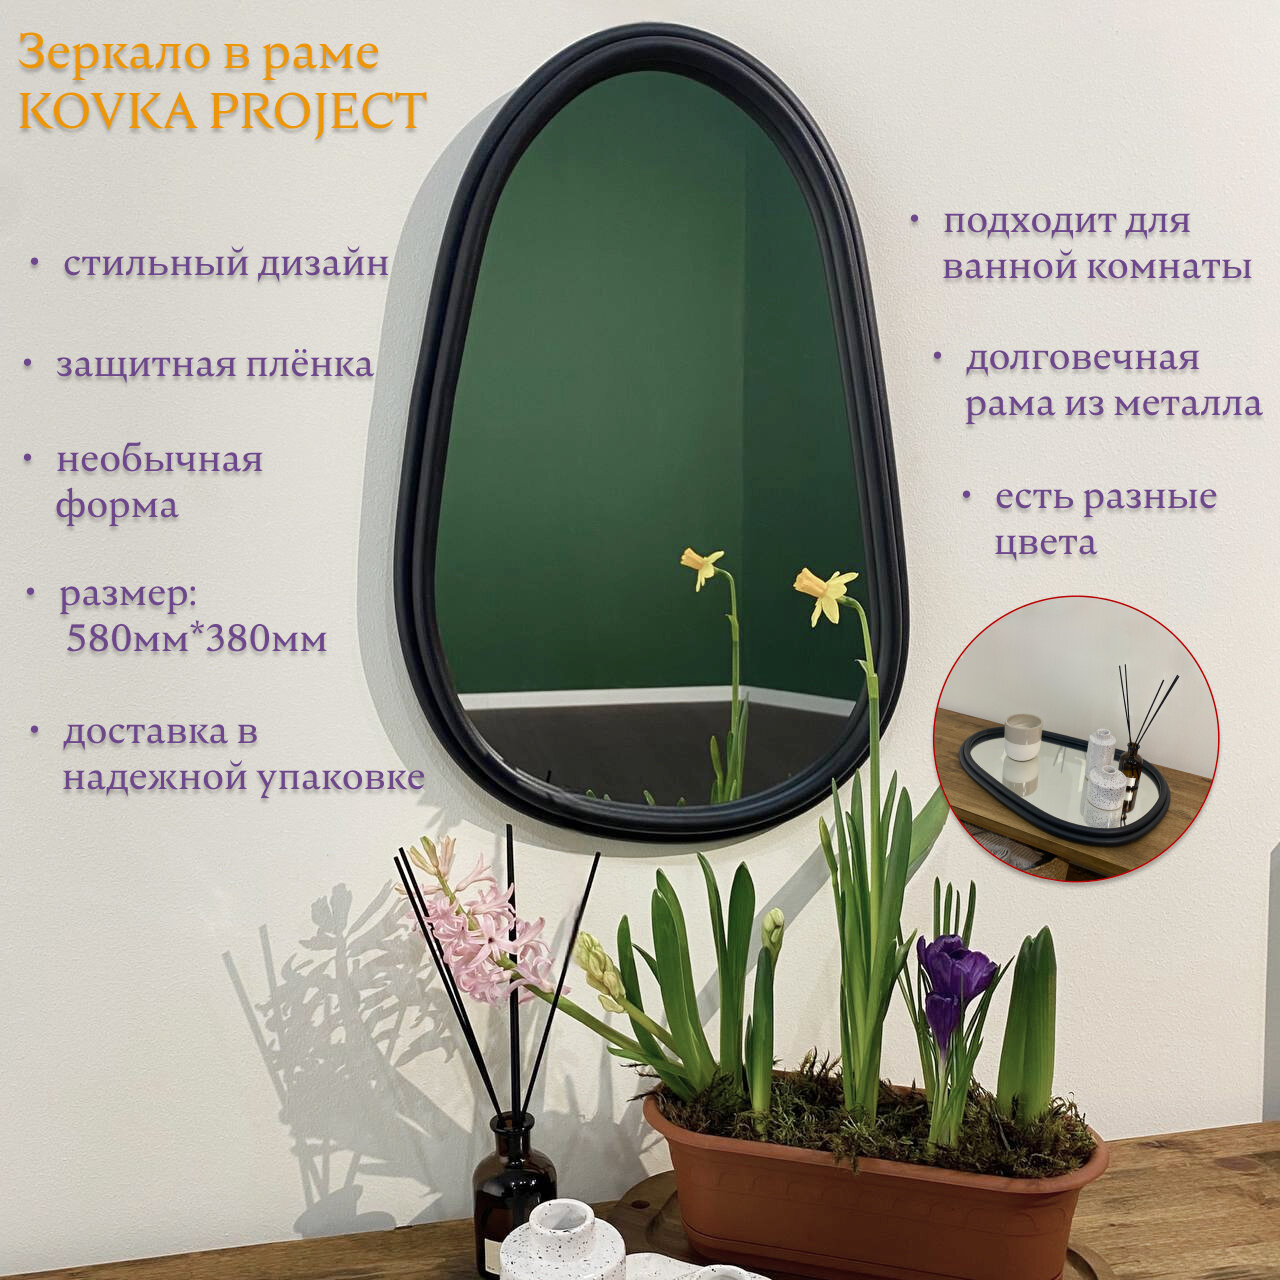 Зеркало настенное в прихожую зеркало декоративное в современном стиле KOVKA PROJECT зеркало в черной матовой раме необычной формы